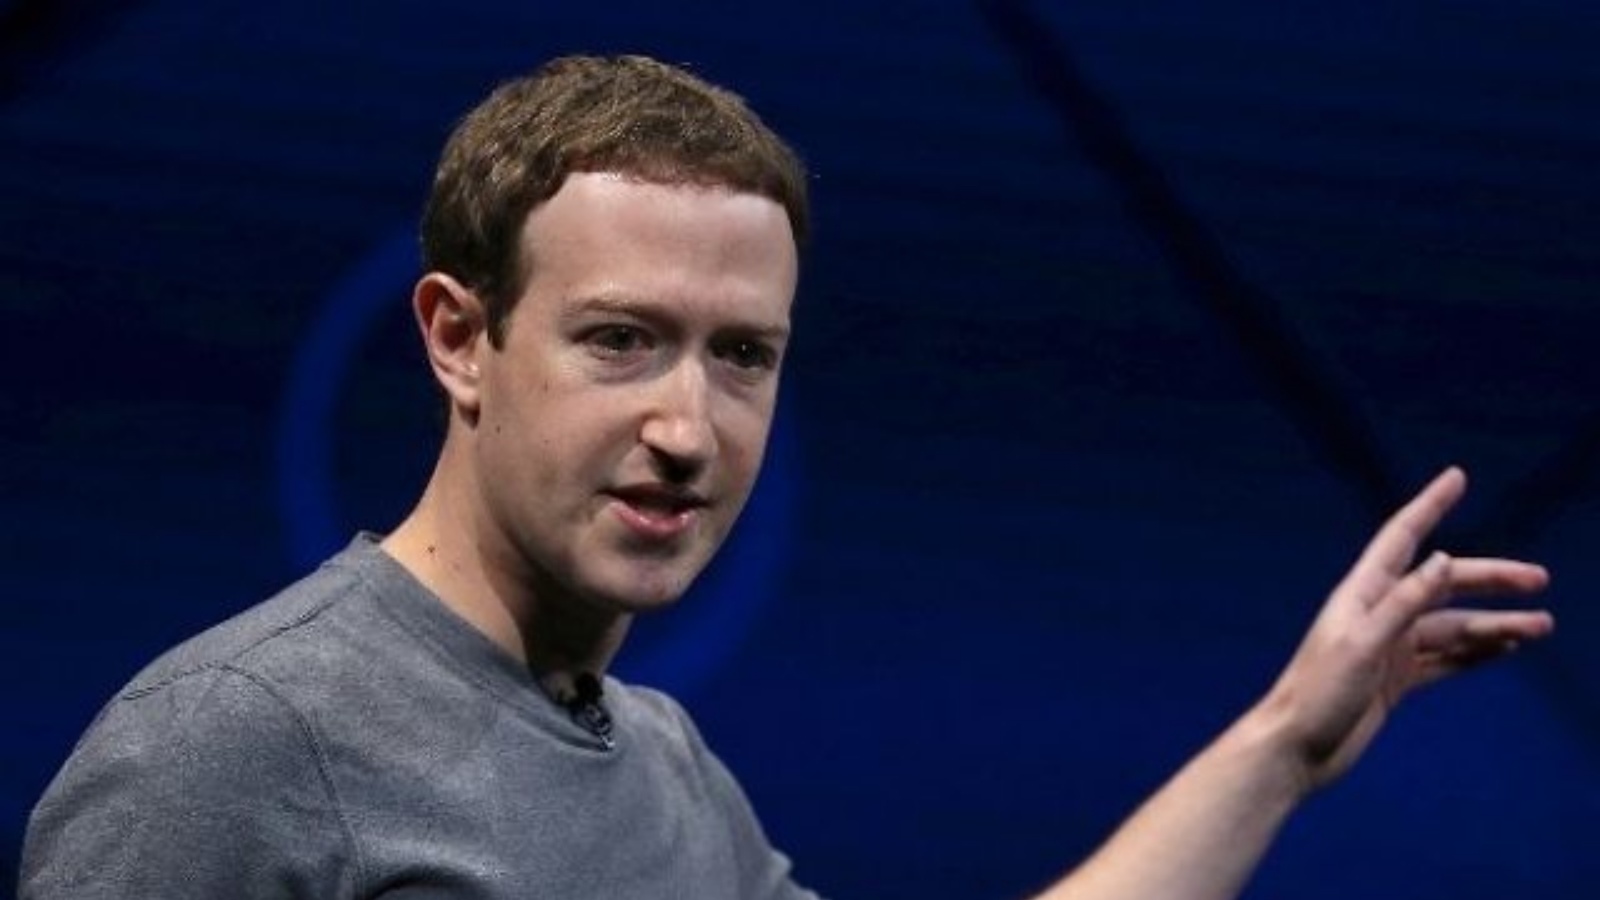  مارك زاكربرغ، مؤسس شبكة فيسبوك الإجتماعية الأميركية العملاقة ورئيسها.